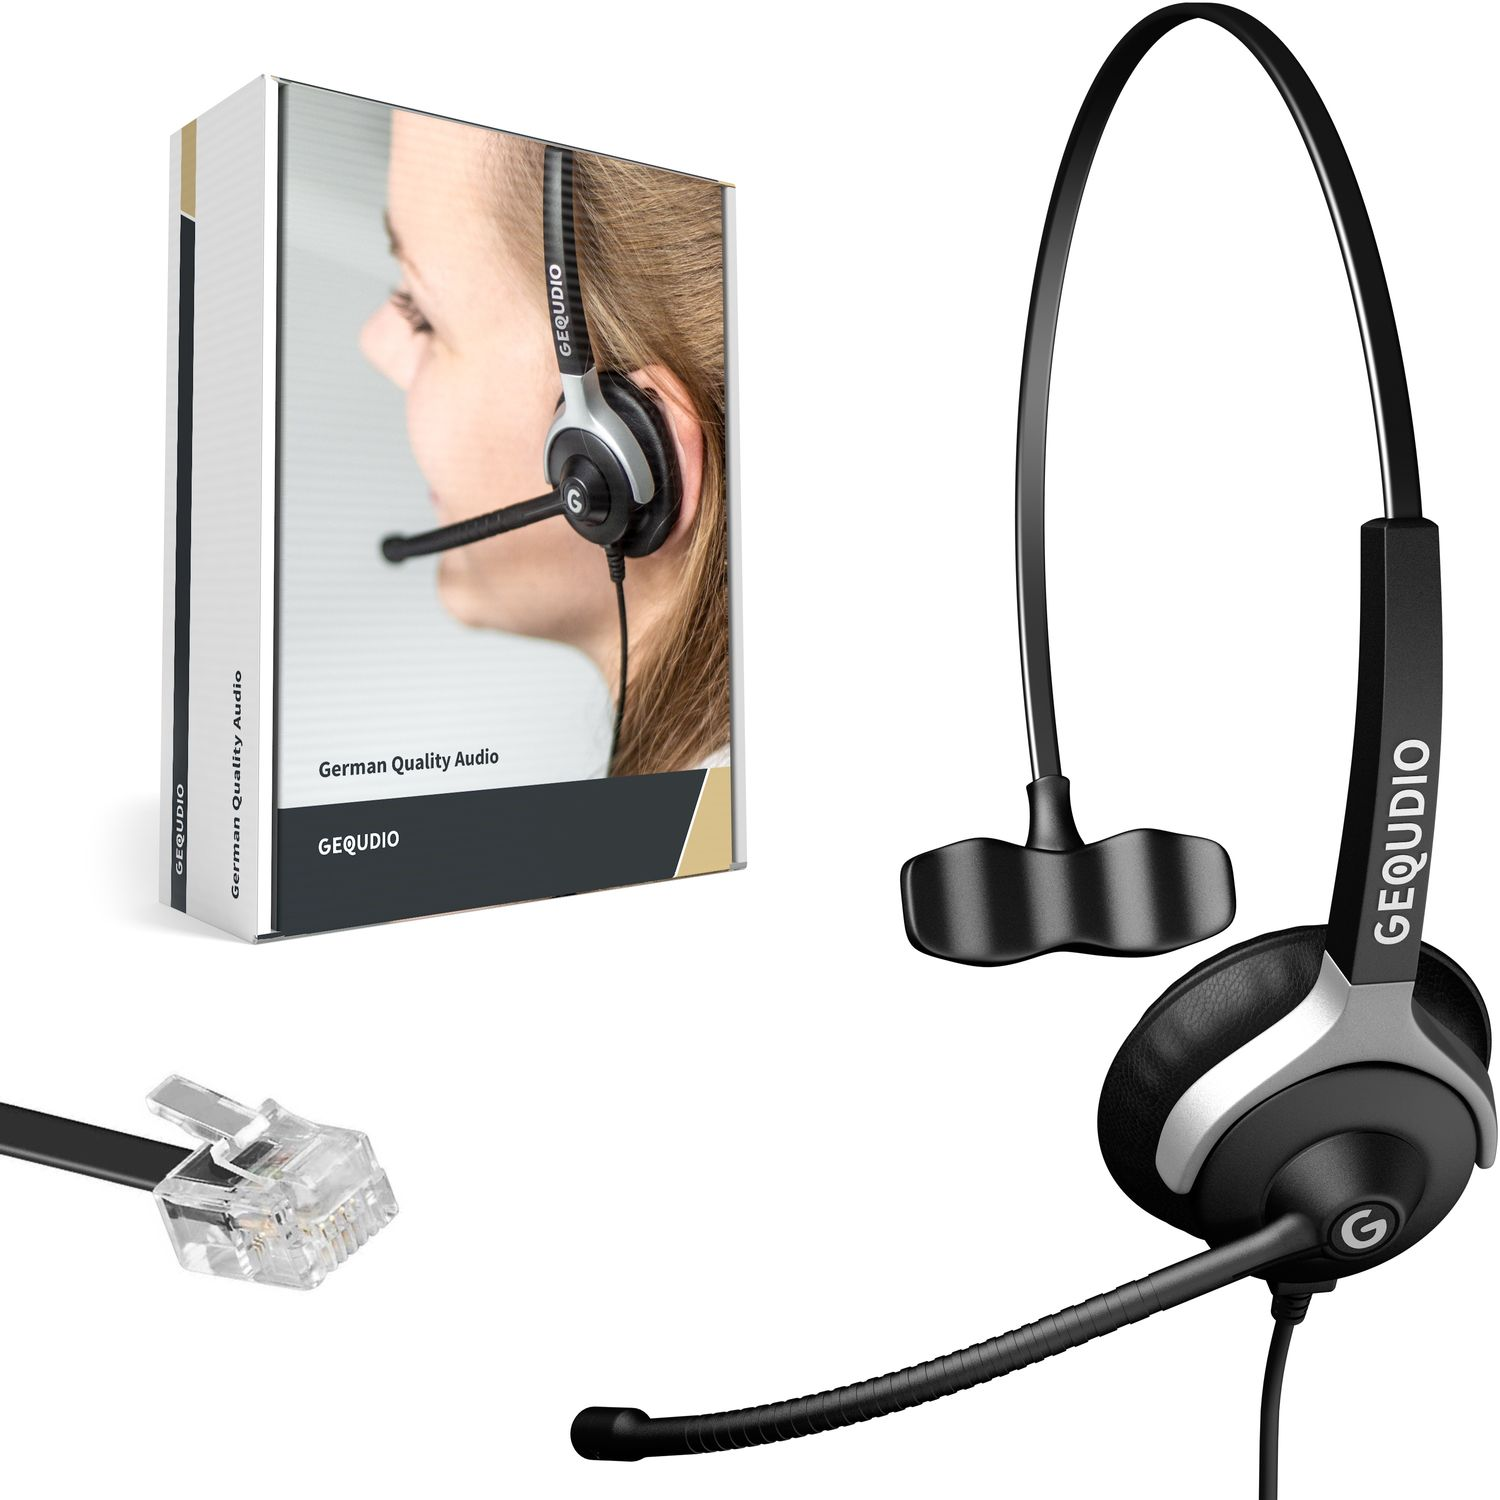 Kabel, On-ear Headset Unify Schwarz GEQUDIO Headset 1-Ohr für mit